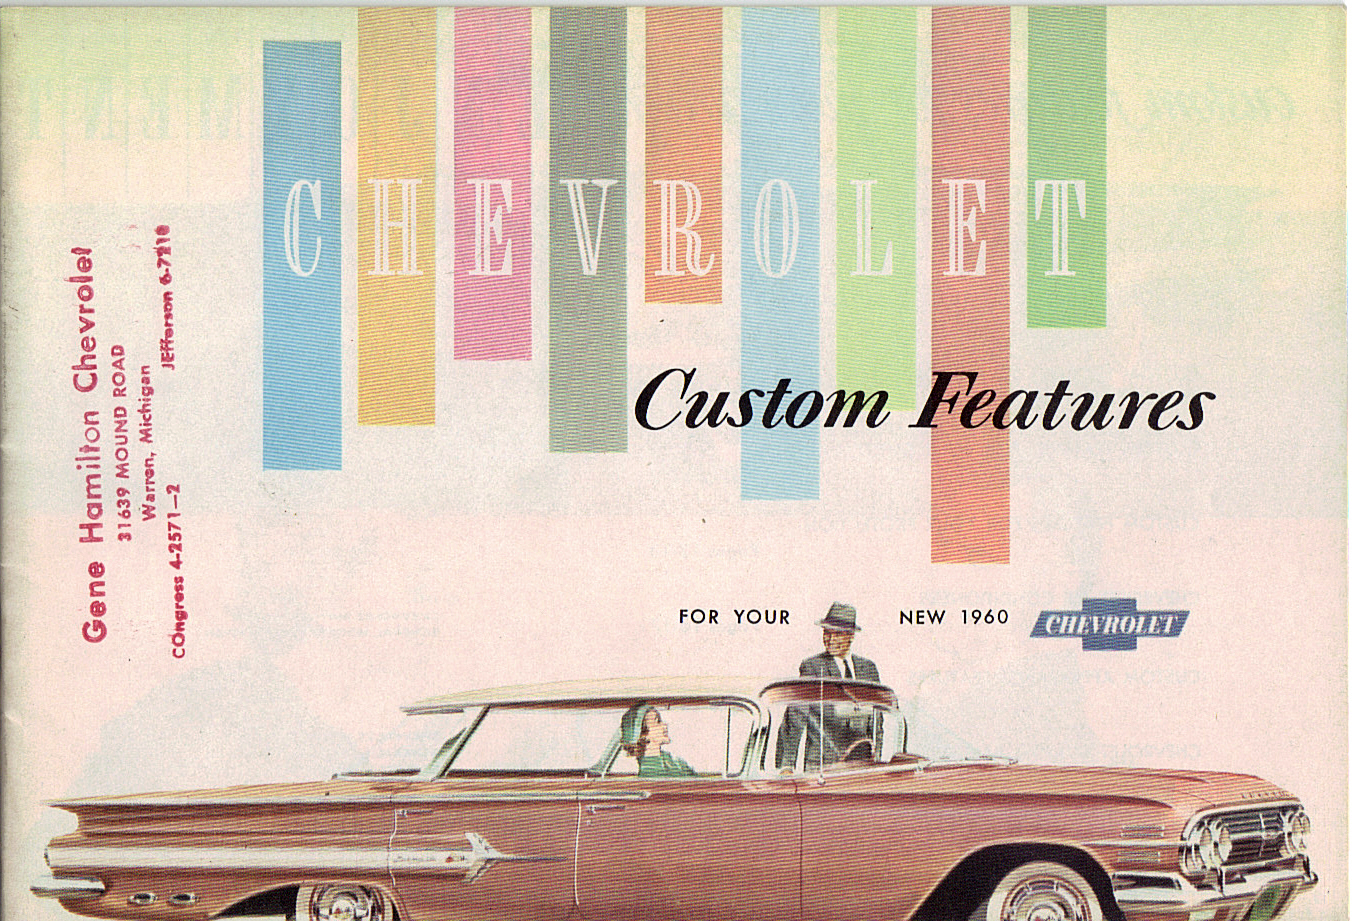 1960 Chevrolet Custom Features Brochure